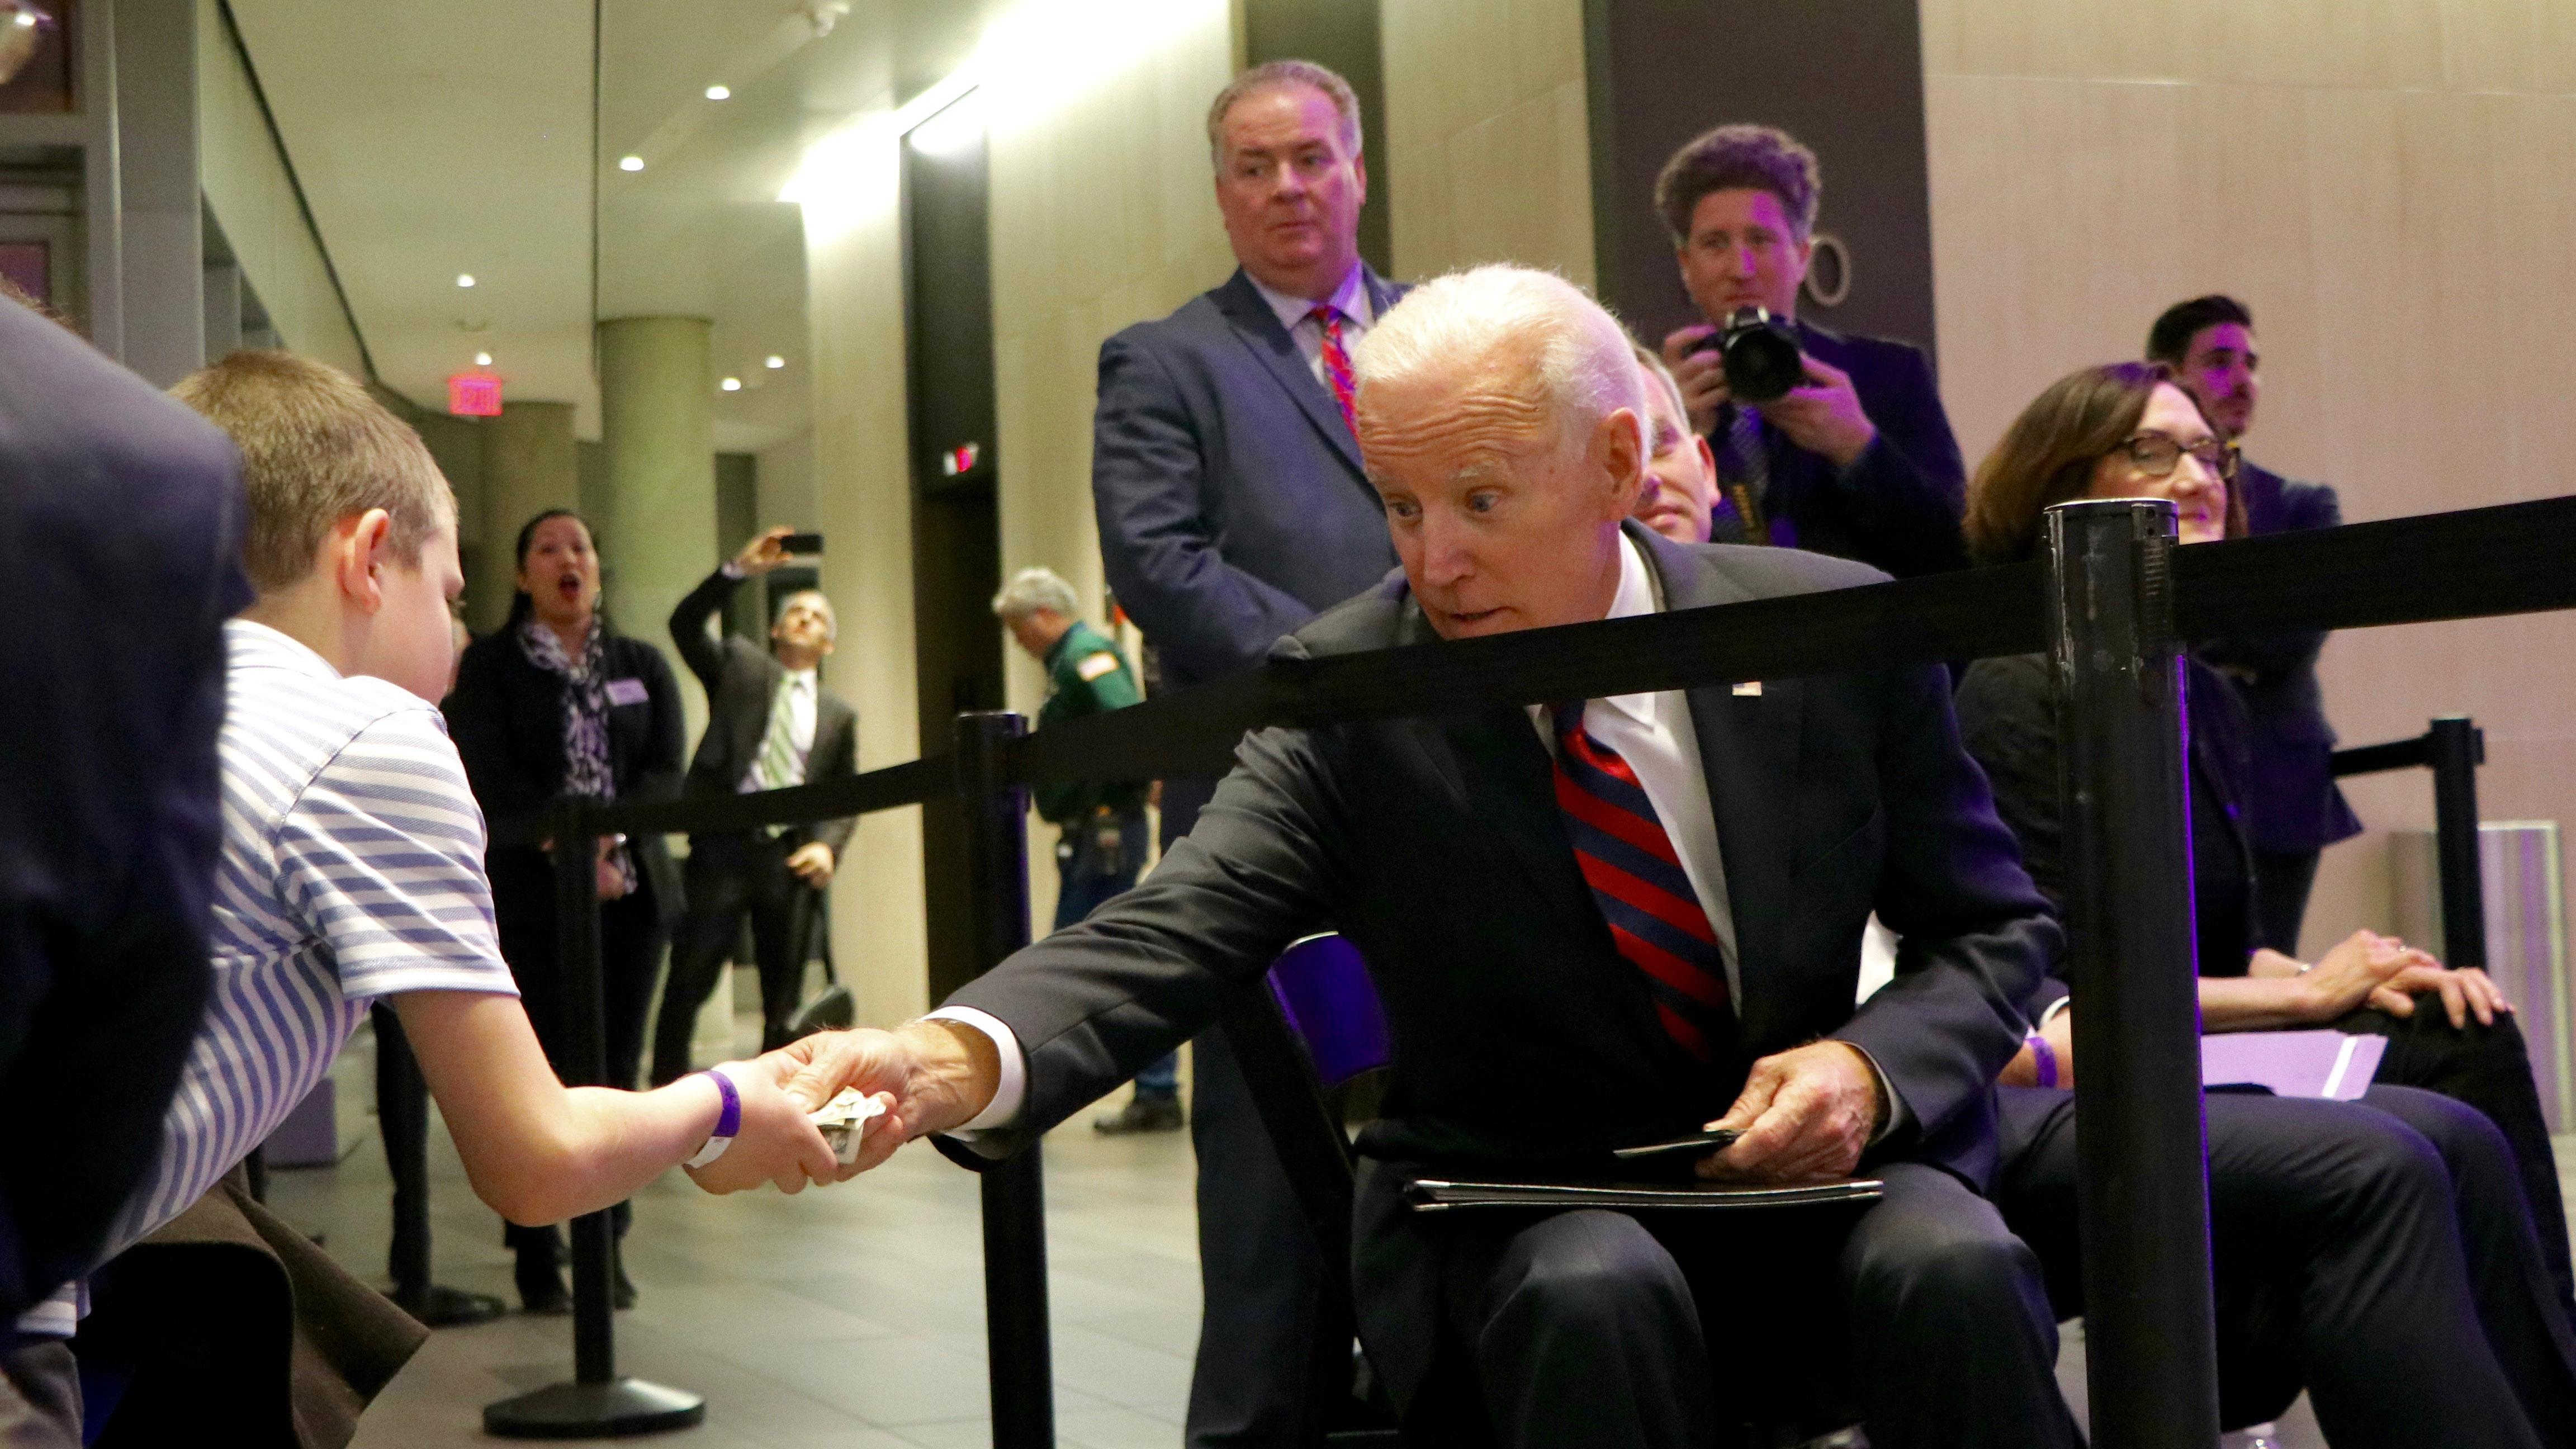 Biden hands a young attendee a few dollars after his speech. (Evan Garcia / Chicago Tonight)